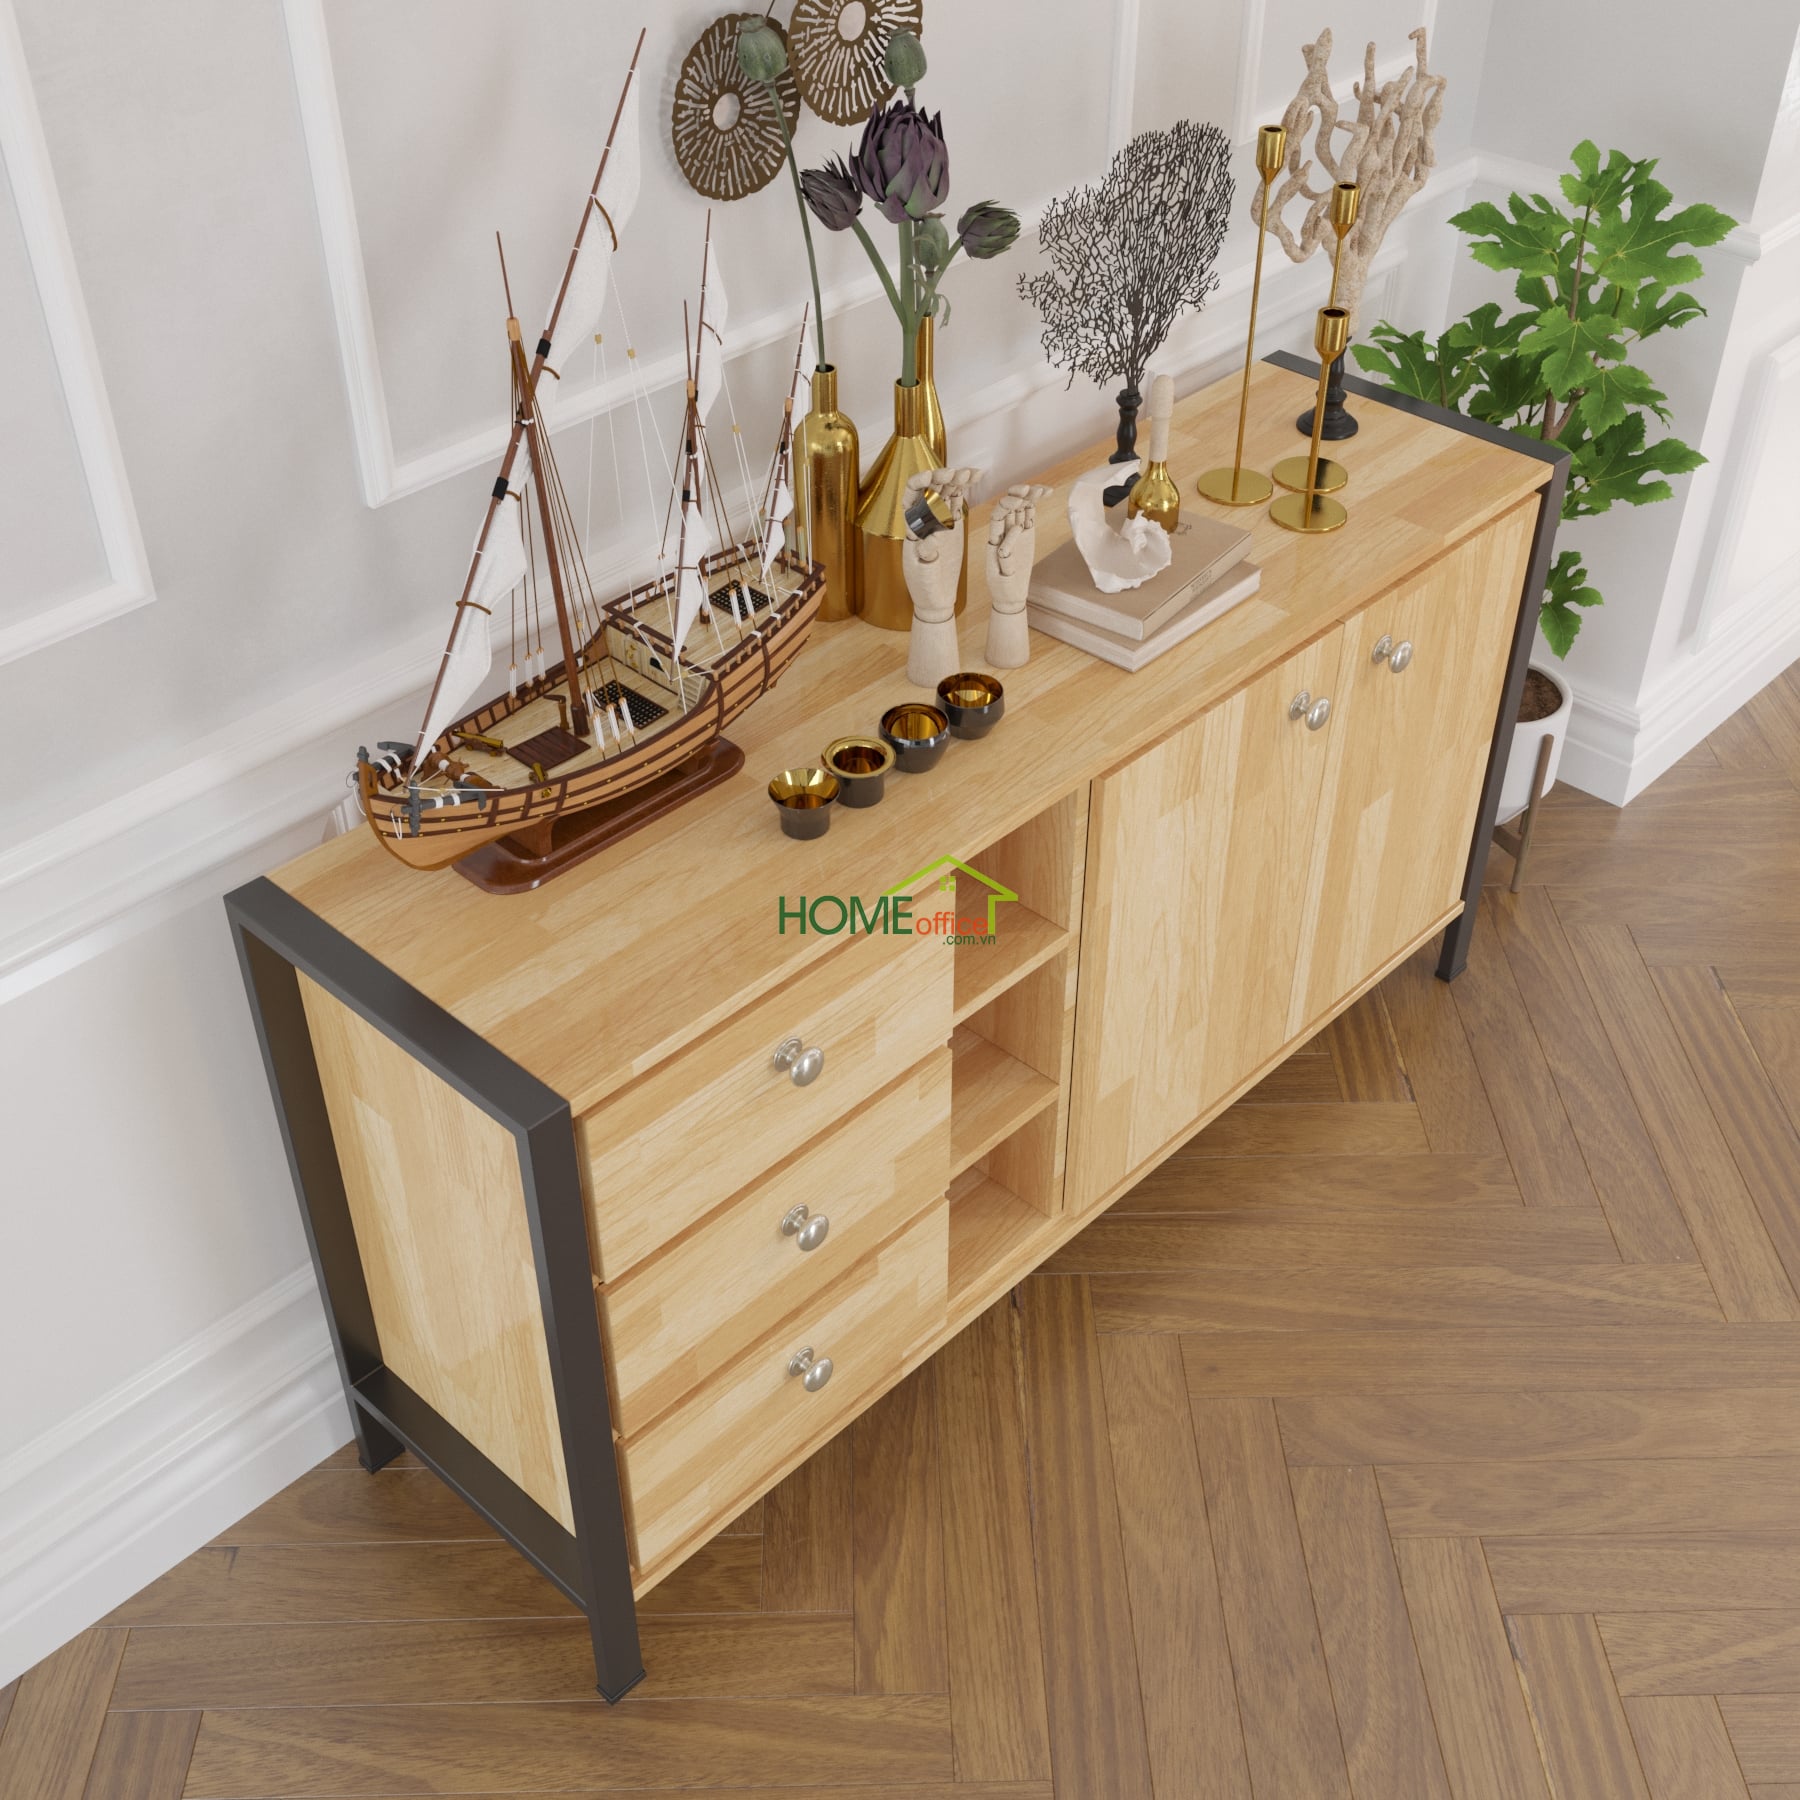 Tủ gỗ trang trí phòng khách HEKUR KTB68026 là một sản phẩm đến từ thương hiệu nổi tiếng HEKUR, mang đến cho bạn một không gian sống đẳng cấp và tiện nghi. Với kiểu dáng hiện đại, tủ gỗ này không chỉ giúp bạn tối ưu hóa không gian mà còn tạo vẻ đẹp độc đáo cho căn phòng của bạn. Hãy để chúng tôi giới thiệu cho bạn những tính năng nổi bật của sản phẩm này.